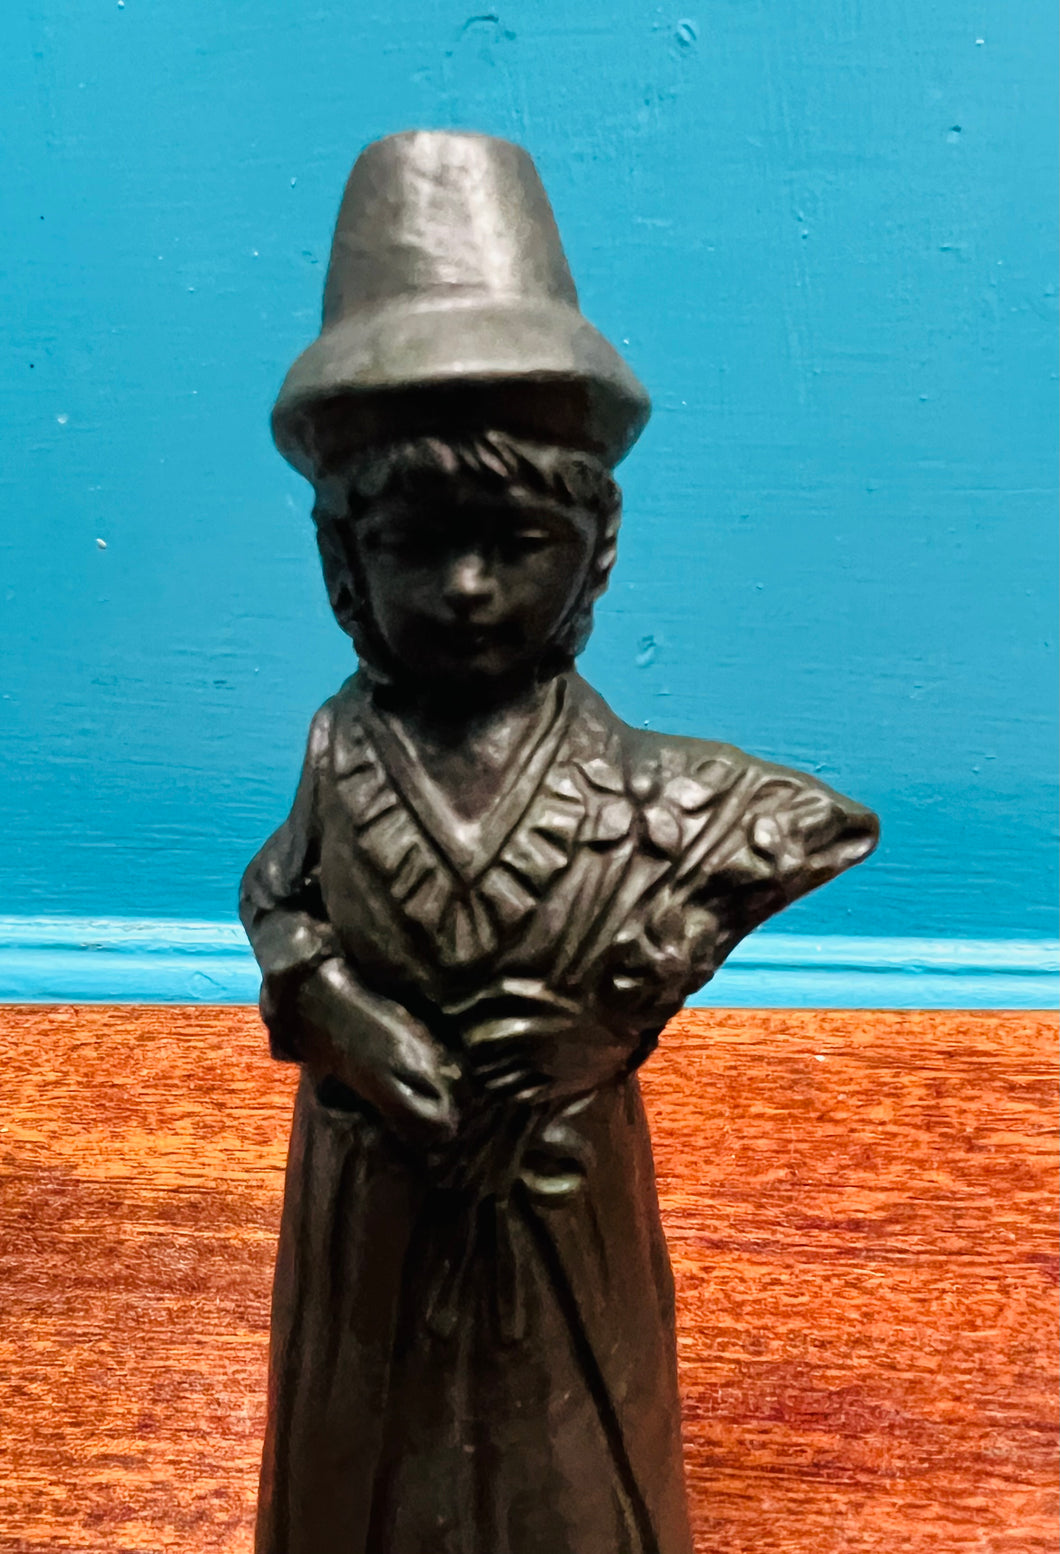 Tair ffigwr Ladi Cymreig Vintage wedi eu gwneud allan o lo Cymreig / Three Vintage Welsh Lady figures made out of Welsh coal